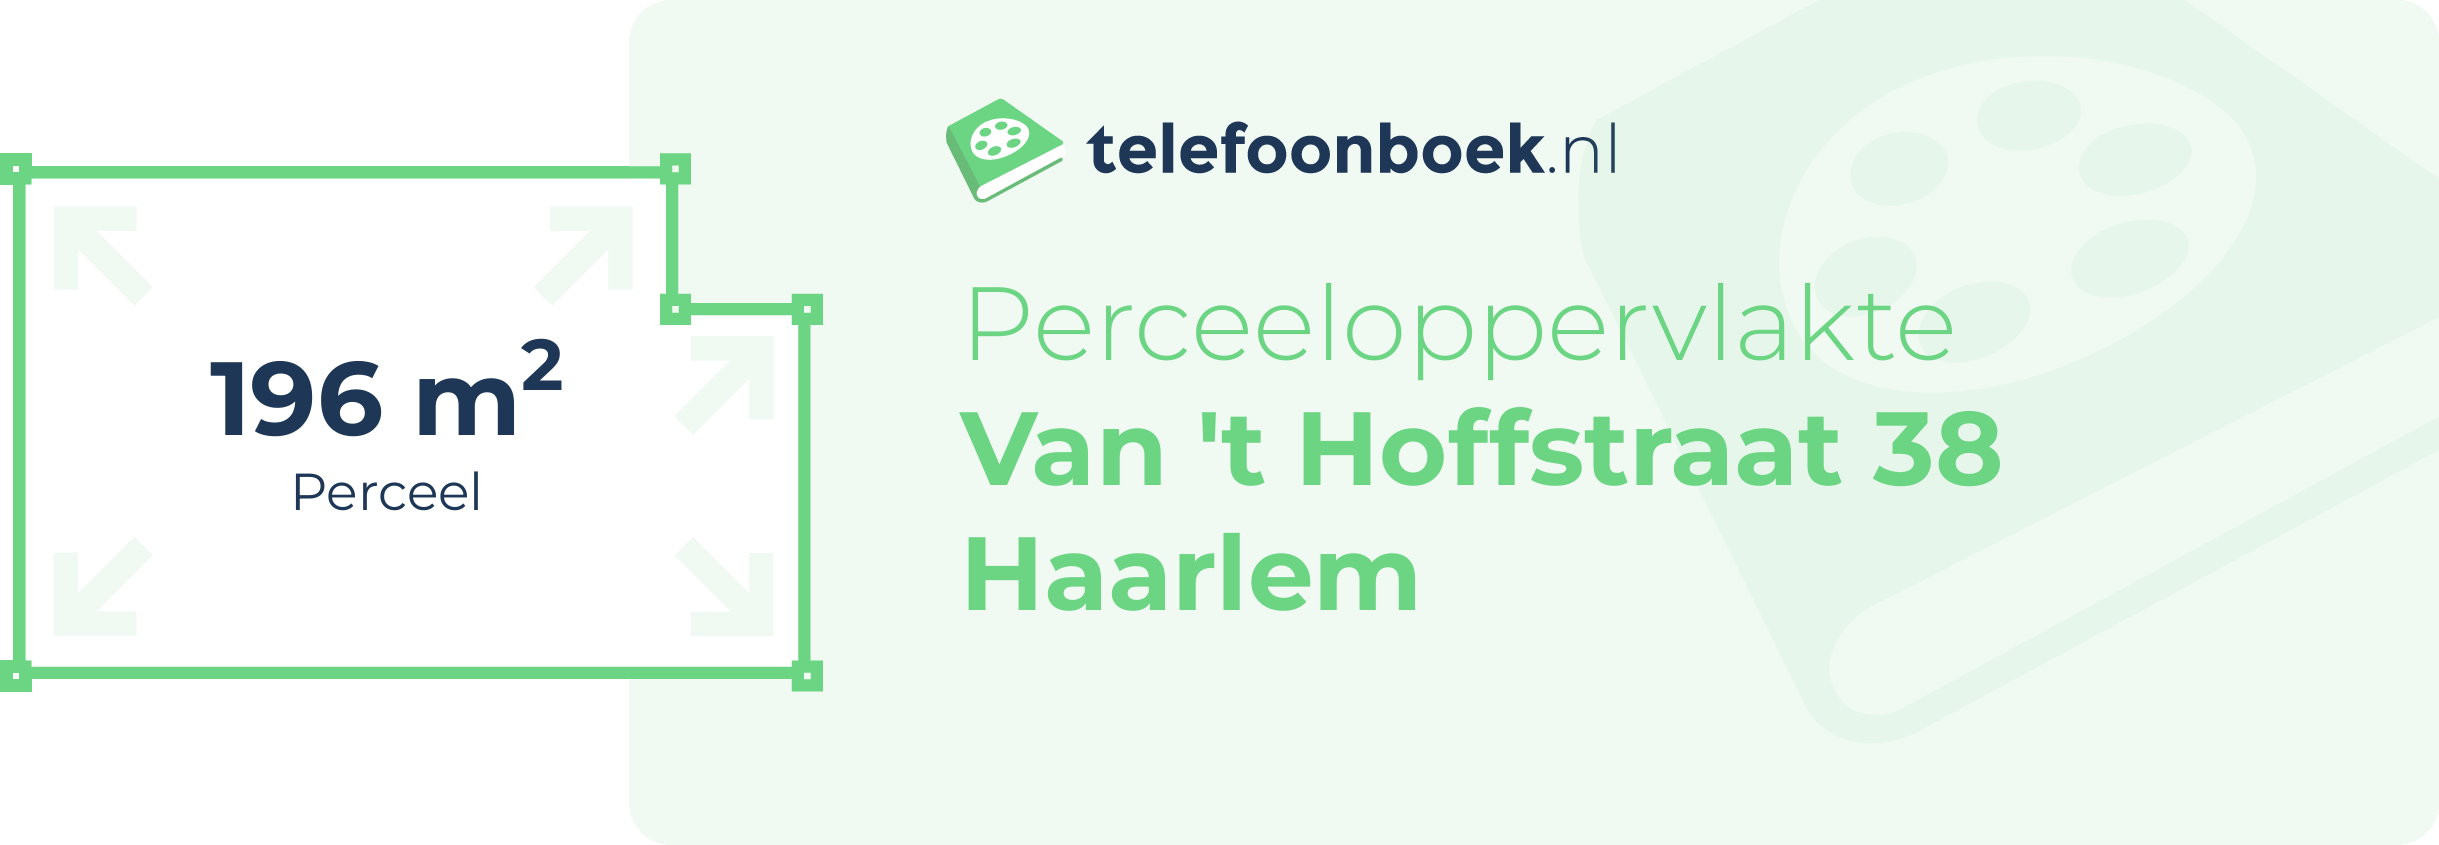 Perceeloppervlakte Van 't Hoffstraat 38 Haarlem